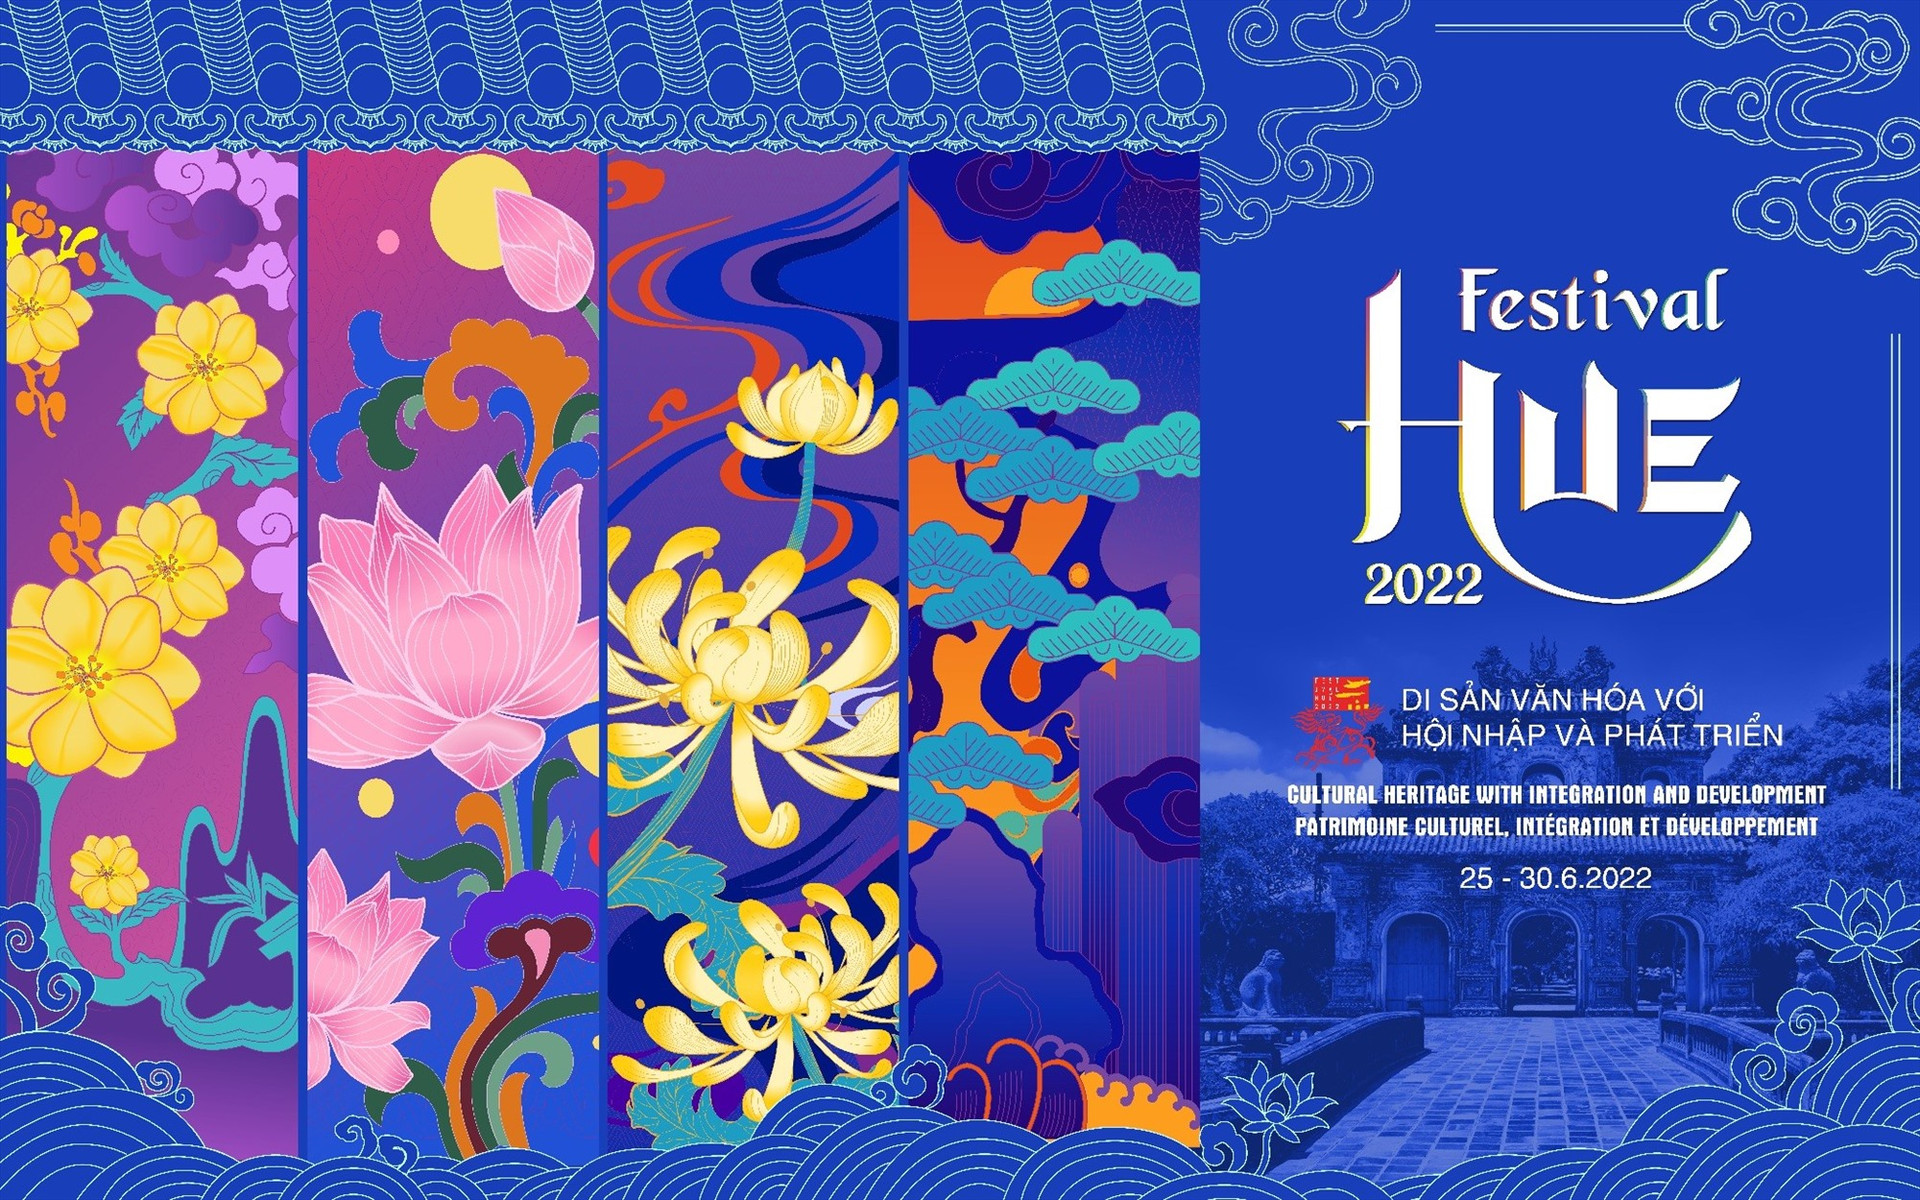 Sự kiện “Bàn tiệc kỷ lục - Kết nối miền Trung” được tổ chức trong khuôn khổ Festival Huế 2022.